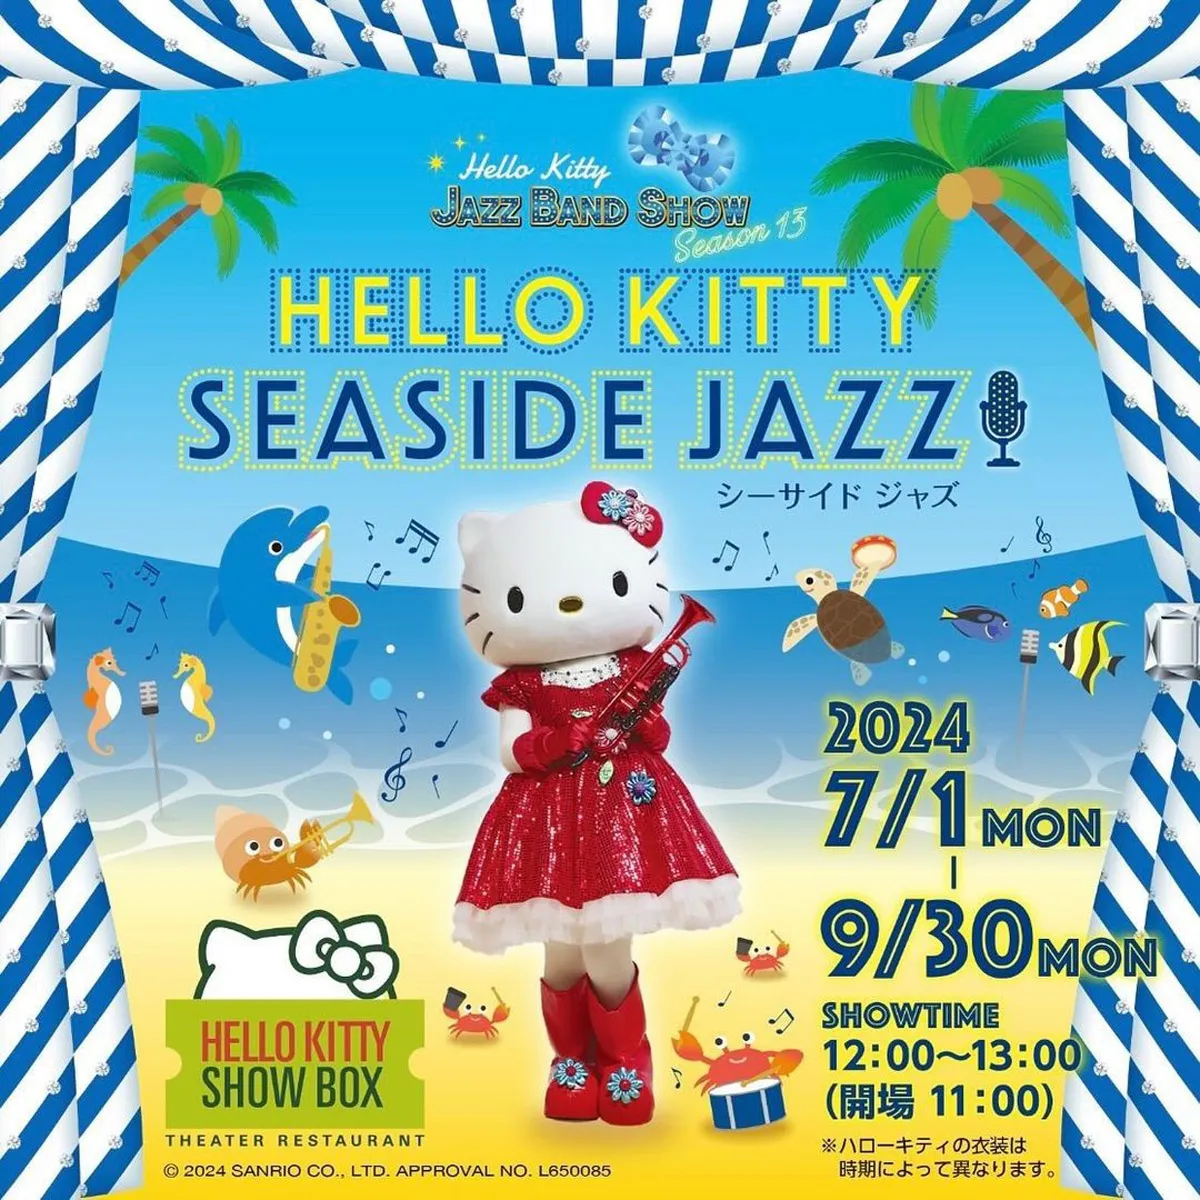 夏のランチ公演「Seaside Jazz」ハローキティショーボックス